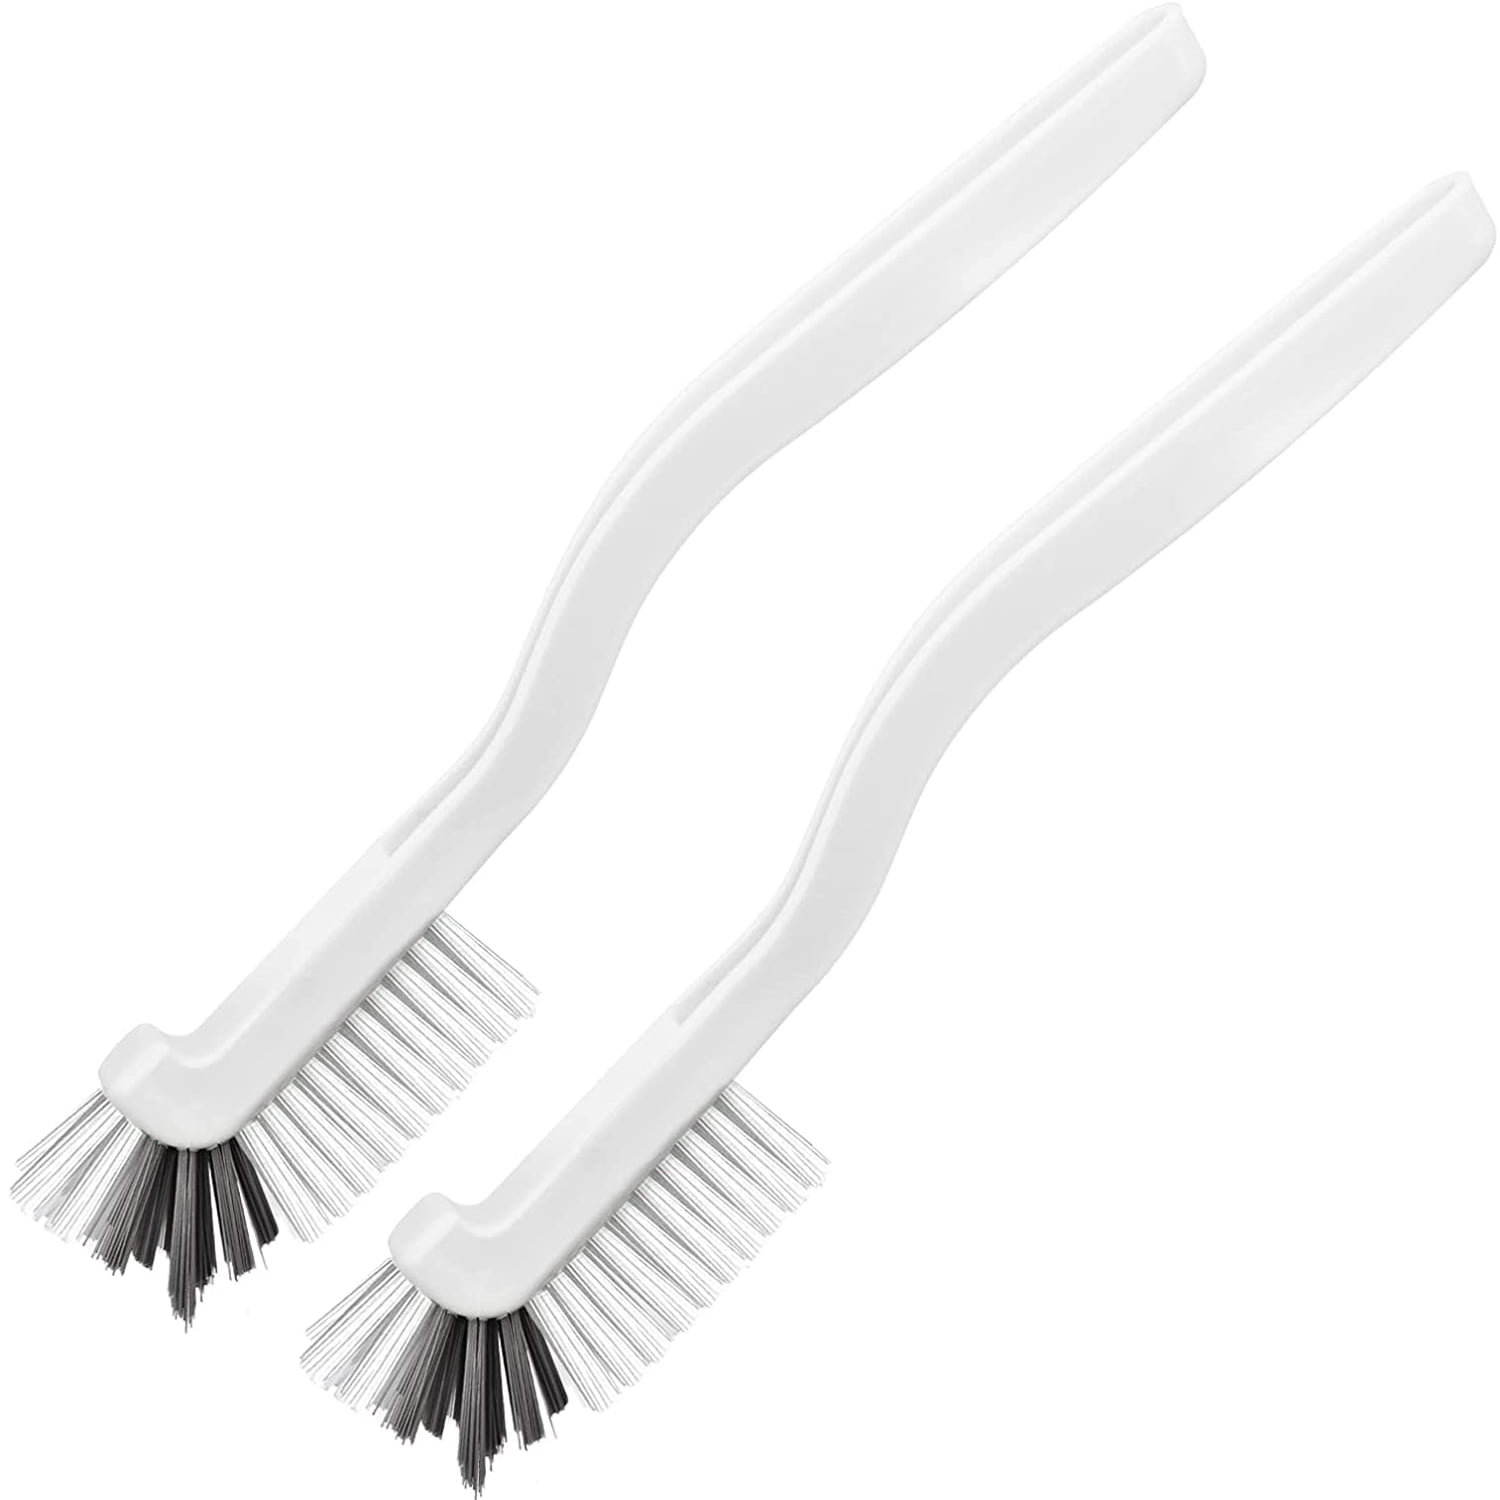 919407-4 Vikan Soft Bristle Dish Scrub Brush, 2 x 10.5 inch, White